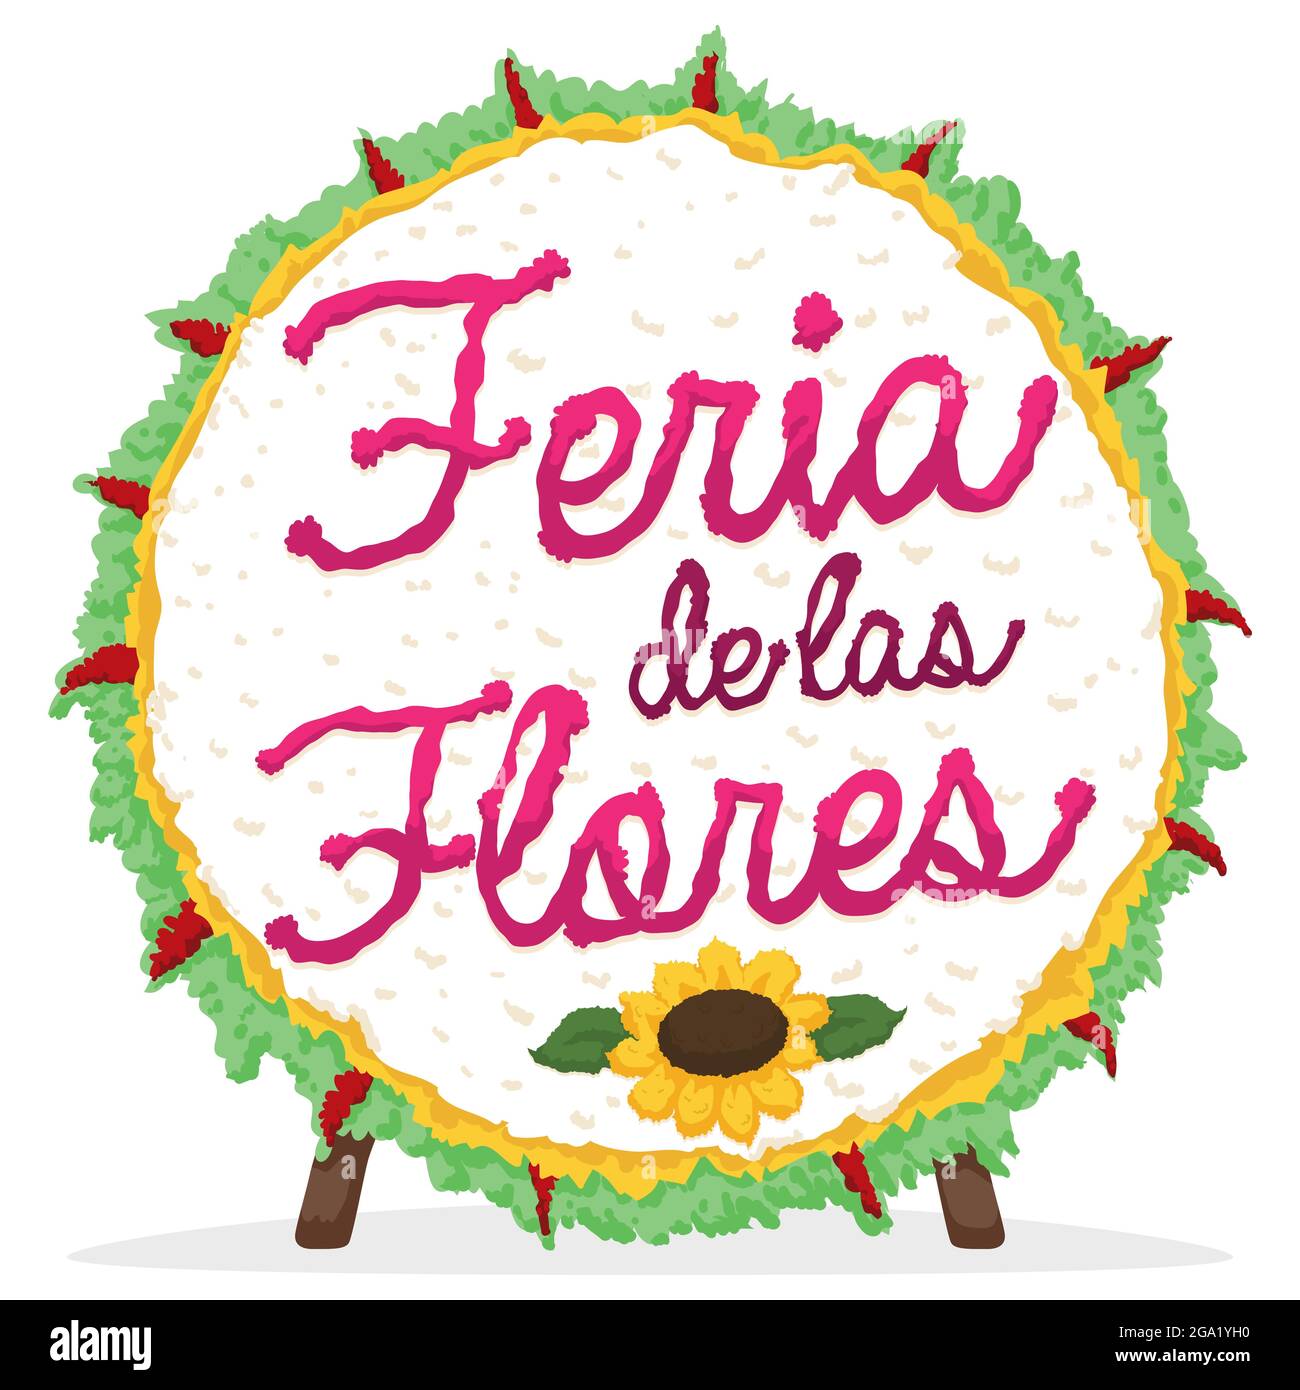 Rundes Silleta-Design in Holzbeinen, verziert mit Sonnenblumen, Blättern und Einladung zum Festival der Blumen - oder 'Feria de las Flores', in Stock Vektor